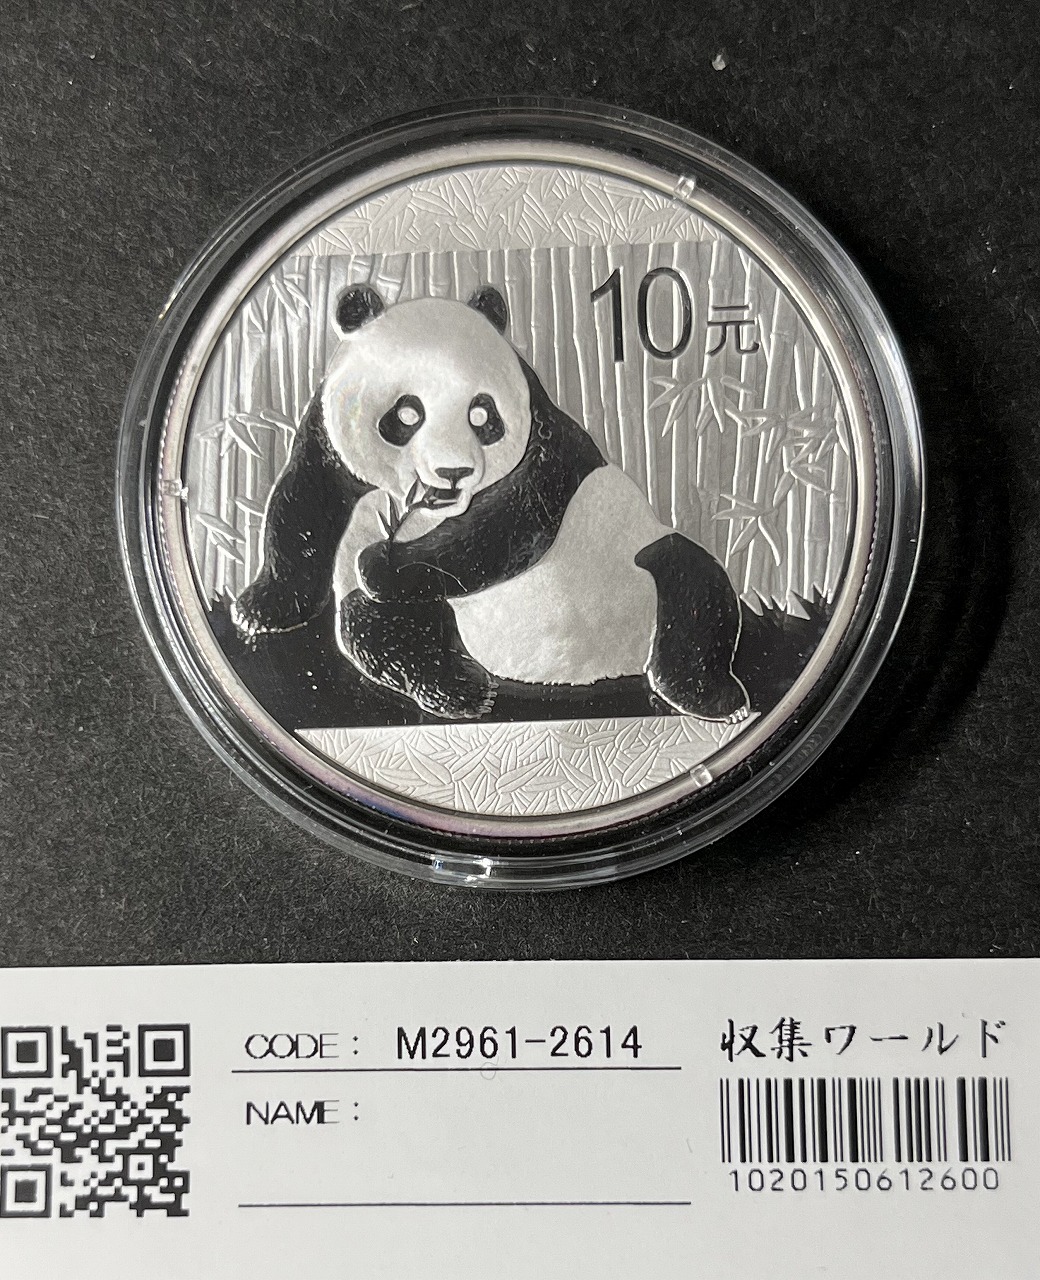 中国パンダ銀貨 2015年10元 1オンス銀貨 プルーフ仕様 未使用